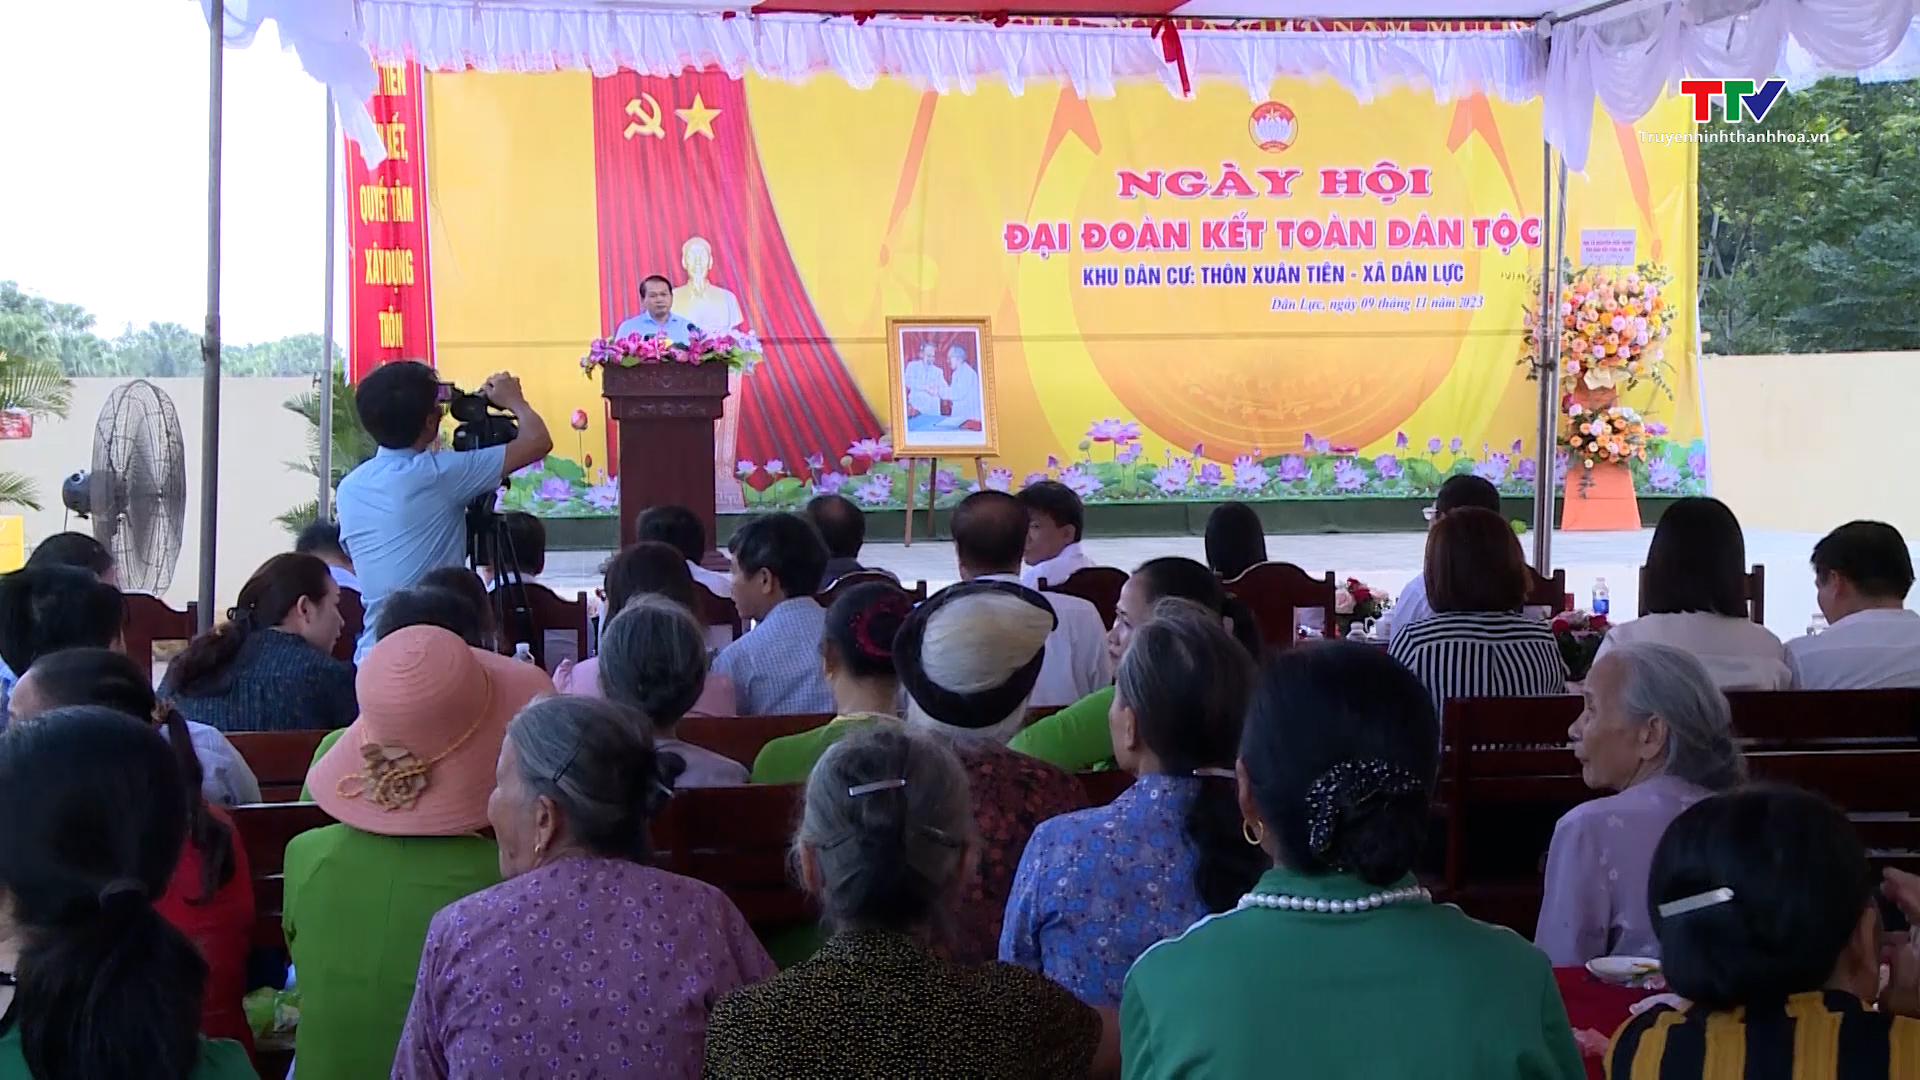 Trưởng Ban Tổ chức Tỉnh ủy dự Ngày hội Đại đoàn kết toàn dân tộc tại huyện Triệu Sơn - Ảnh 1.